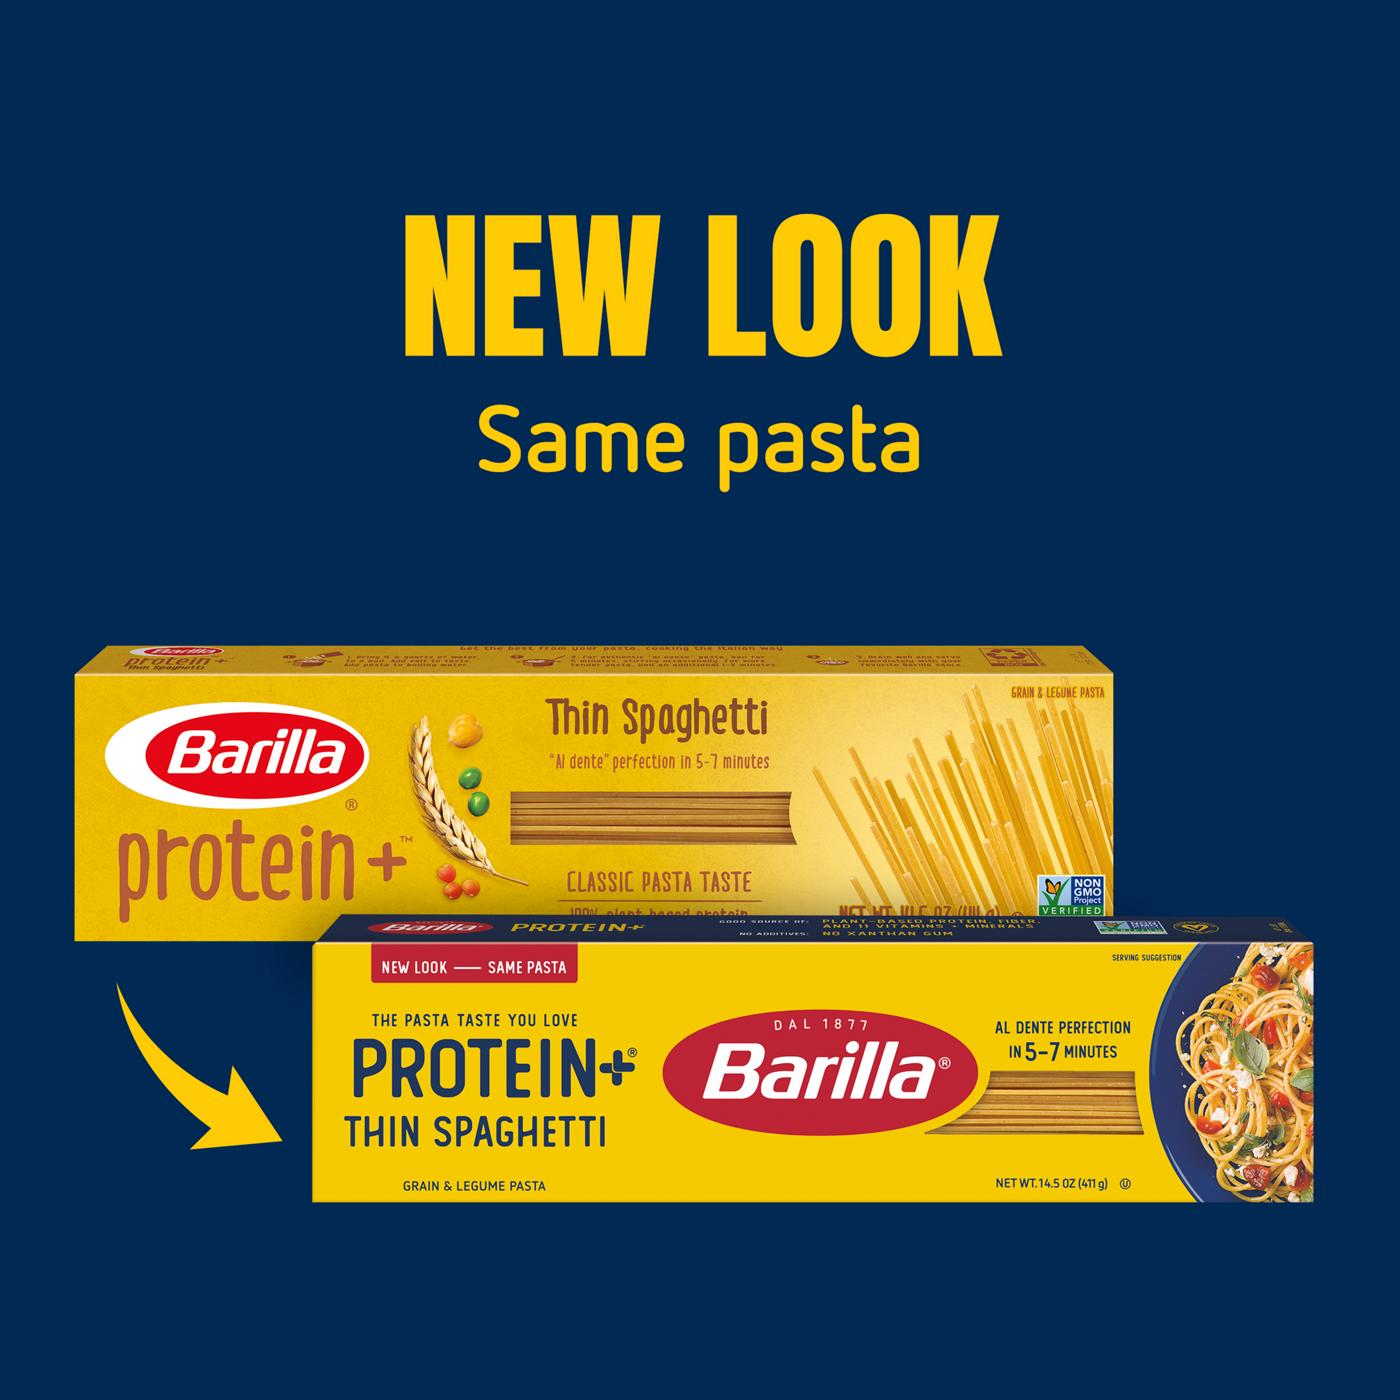 Barilla Spaghetti Pasta - Shop Pasta at H-E-B